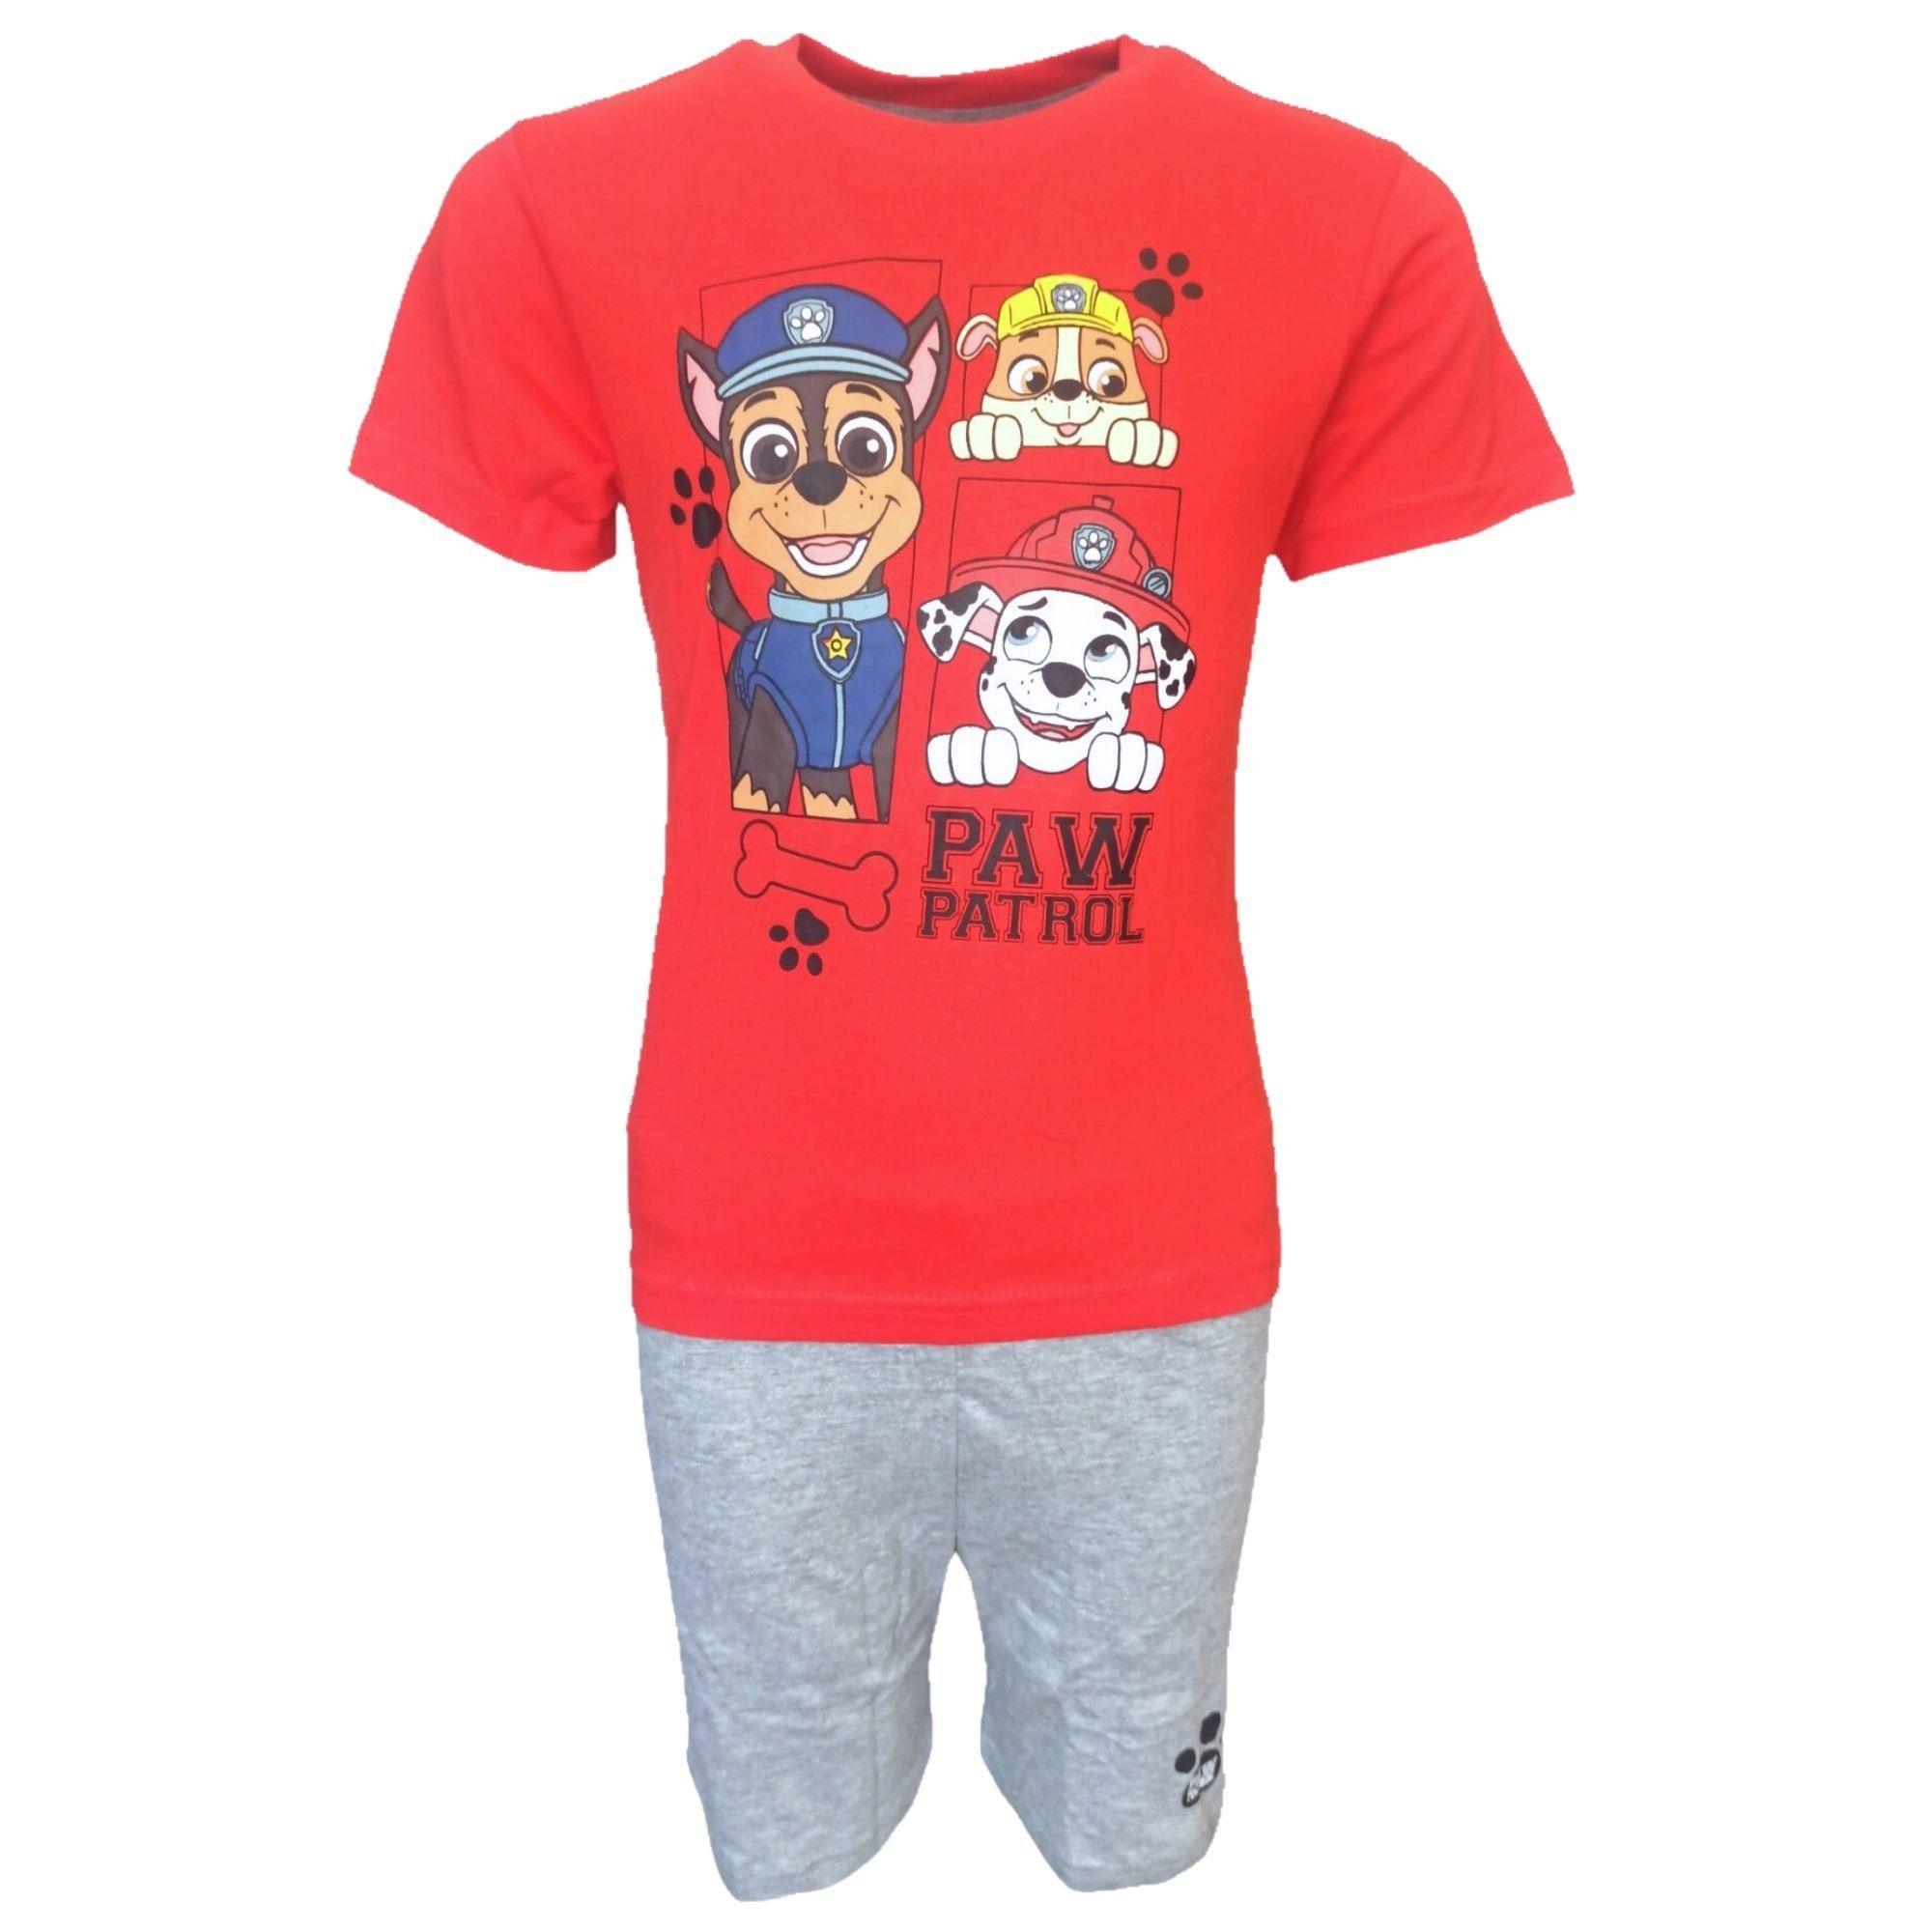 PAW PATROL Schlafanzug (2 tlg) Jungen Pyjama Set - Shorty Gr. 98-128 cm Rot-Grau